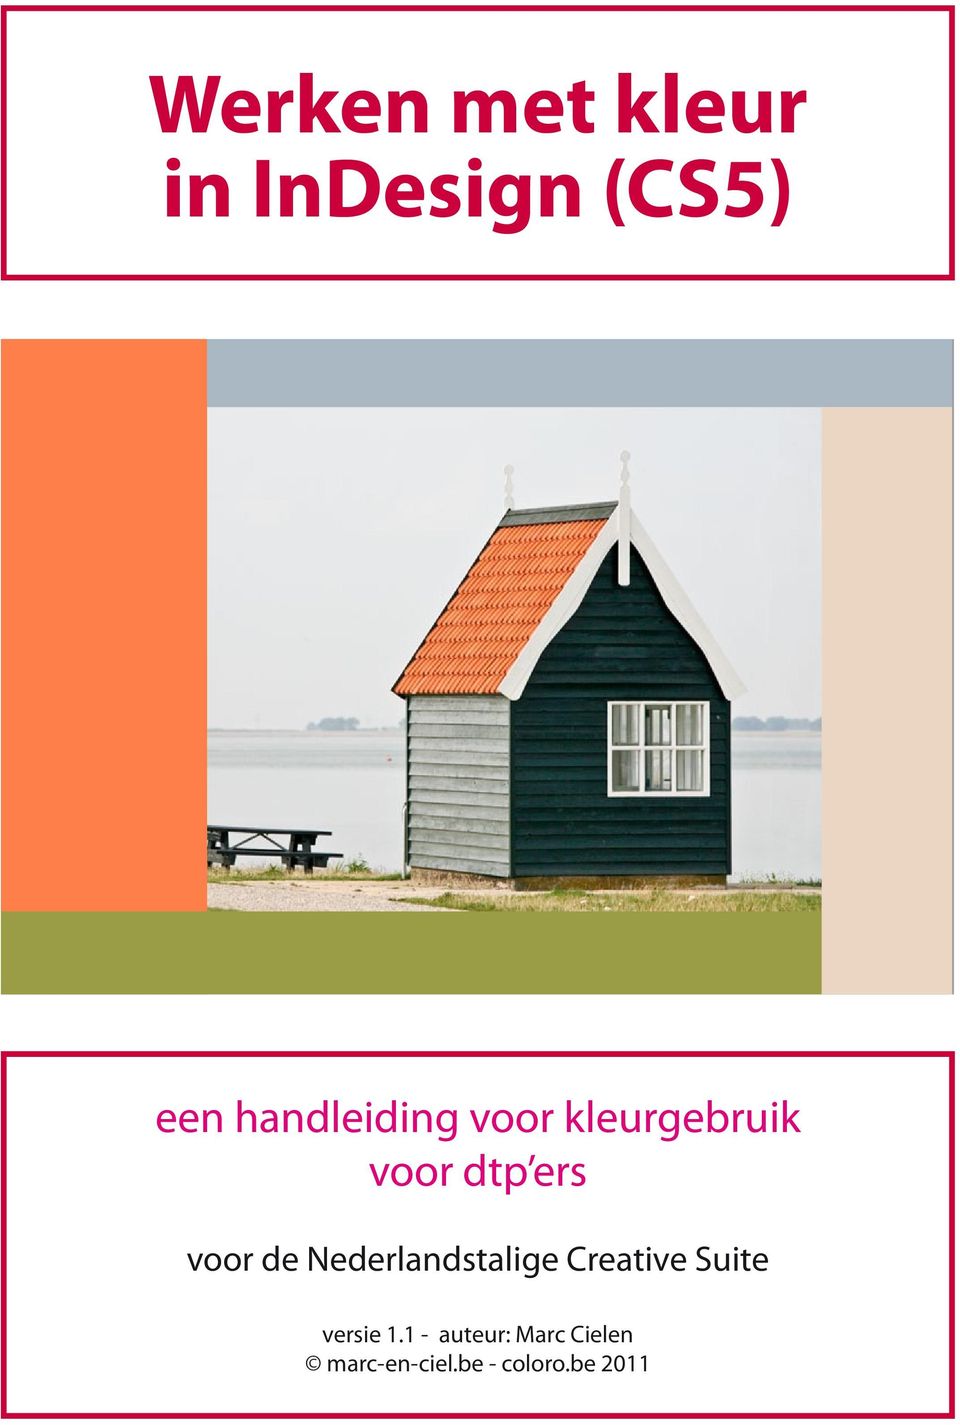 voor de Nederlandstalige Creative Suite versie